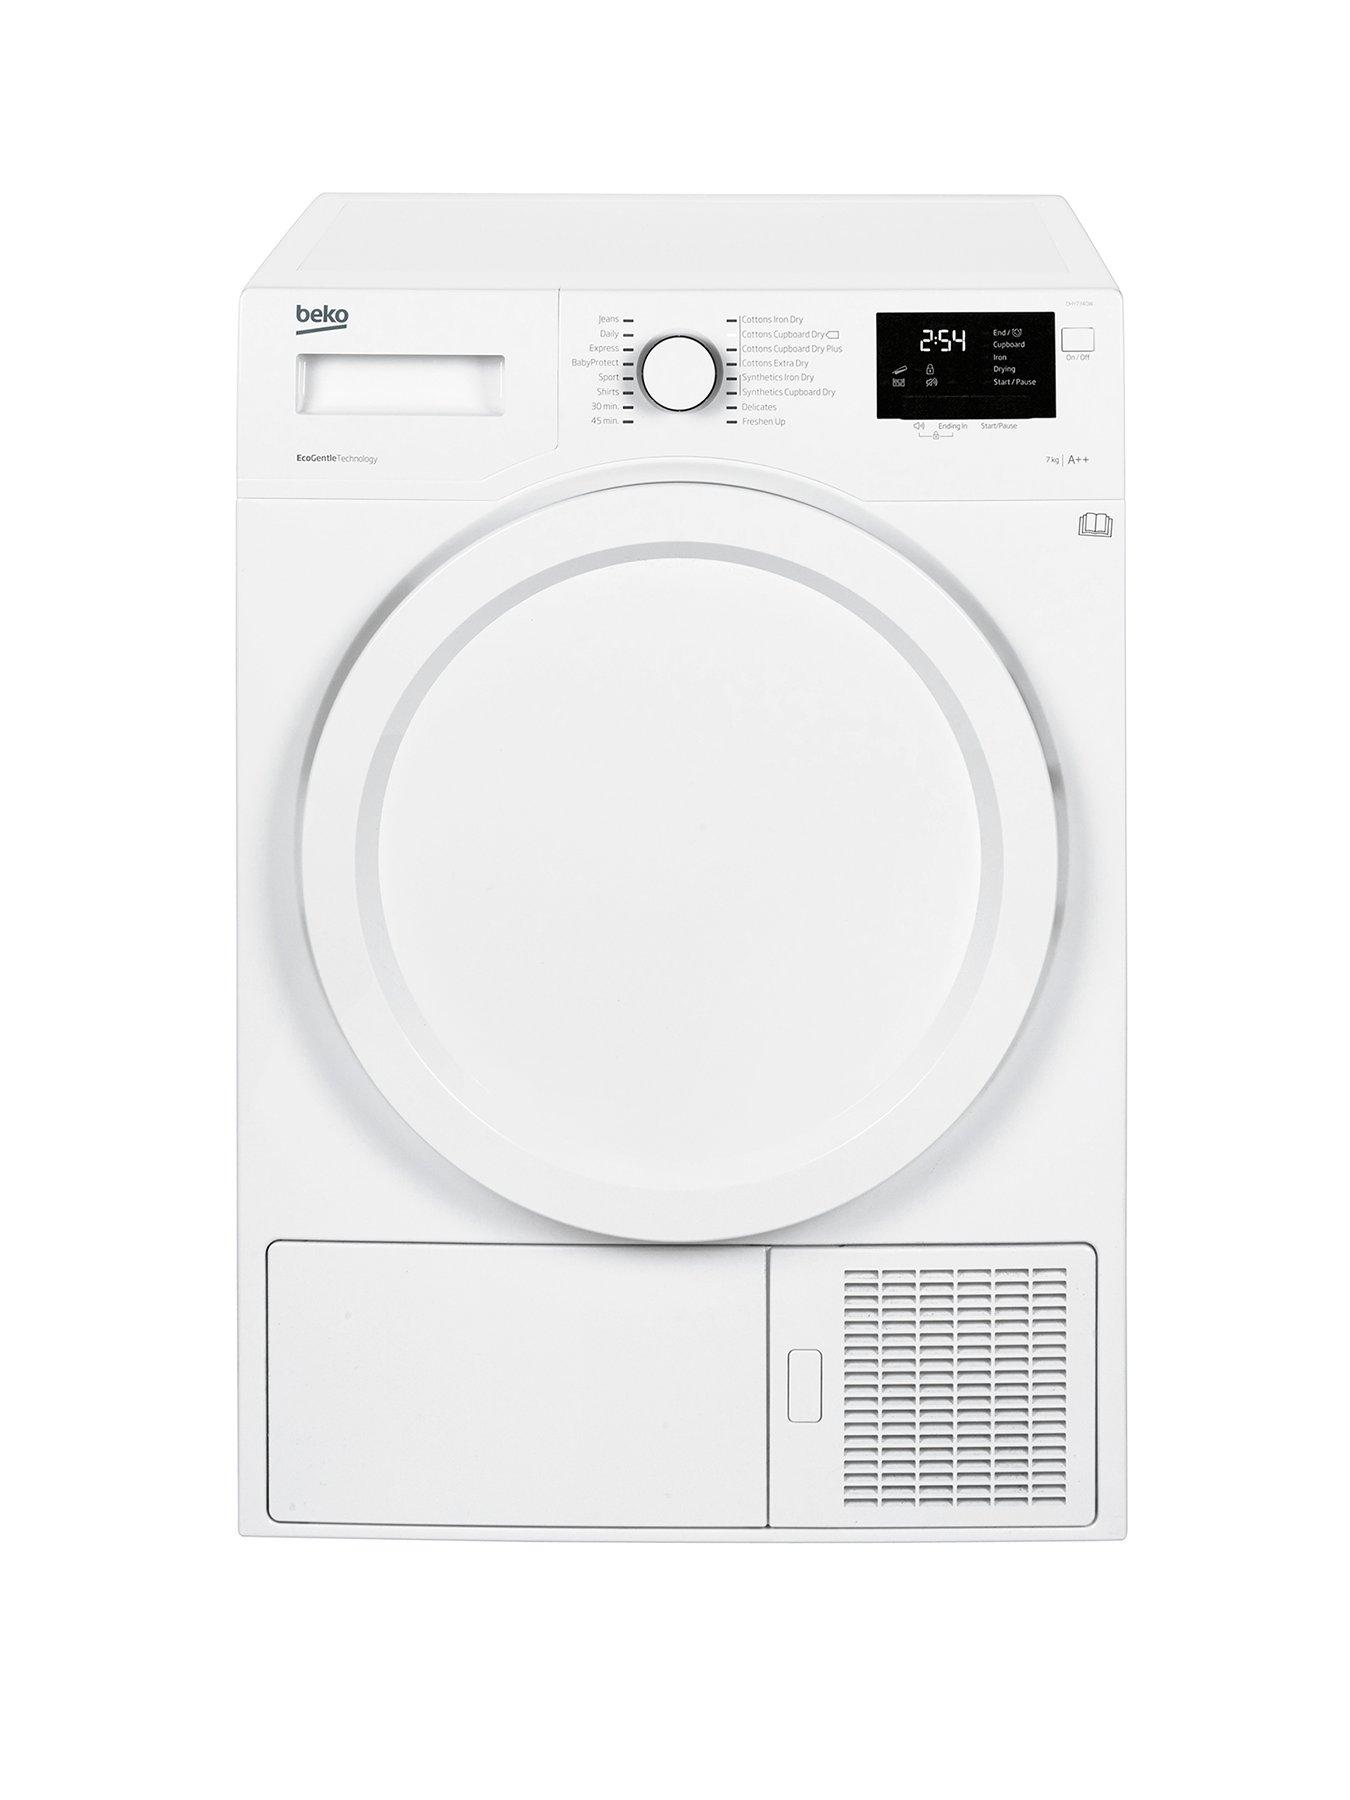 Beko Dhy7340W 7Kg Condenser Dryer With Heat Pump – White